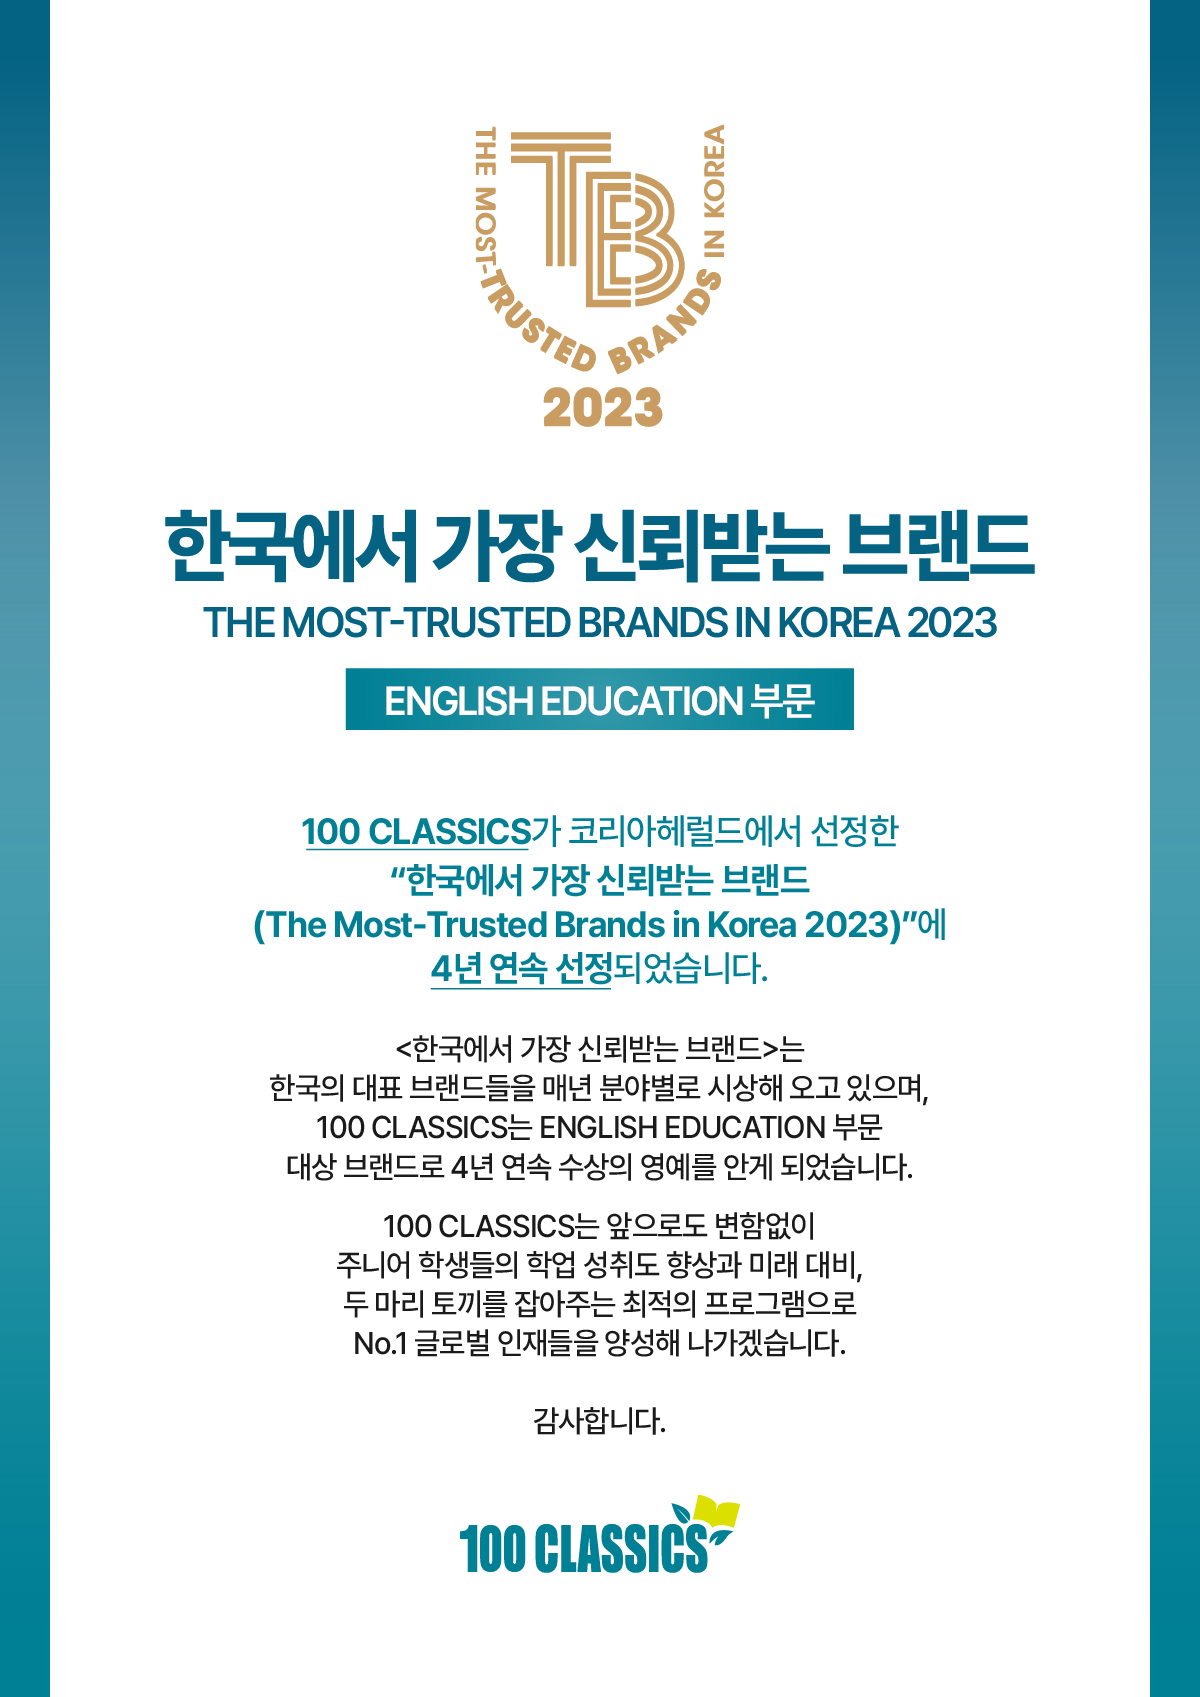 2023 100 CLASSICS 한국에서 가장 신뢰받는 브랜드_web2.png